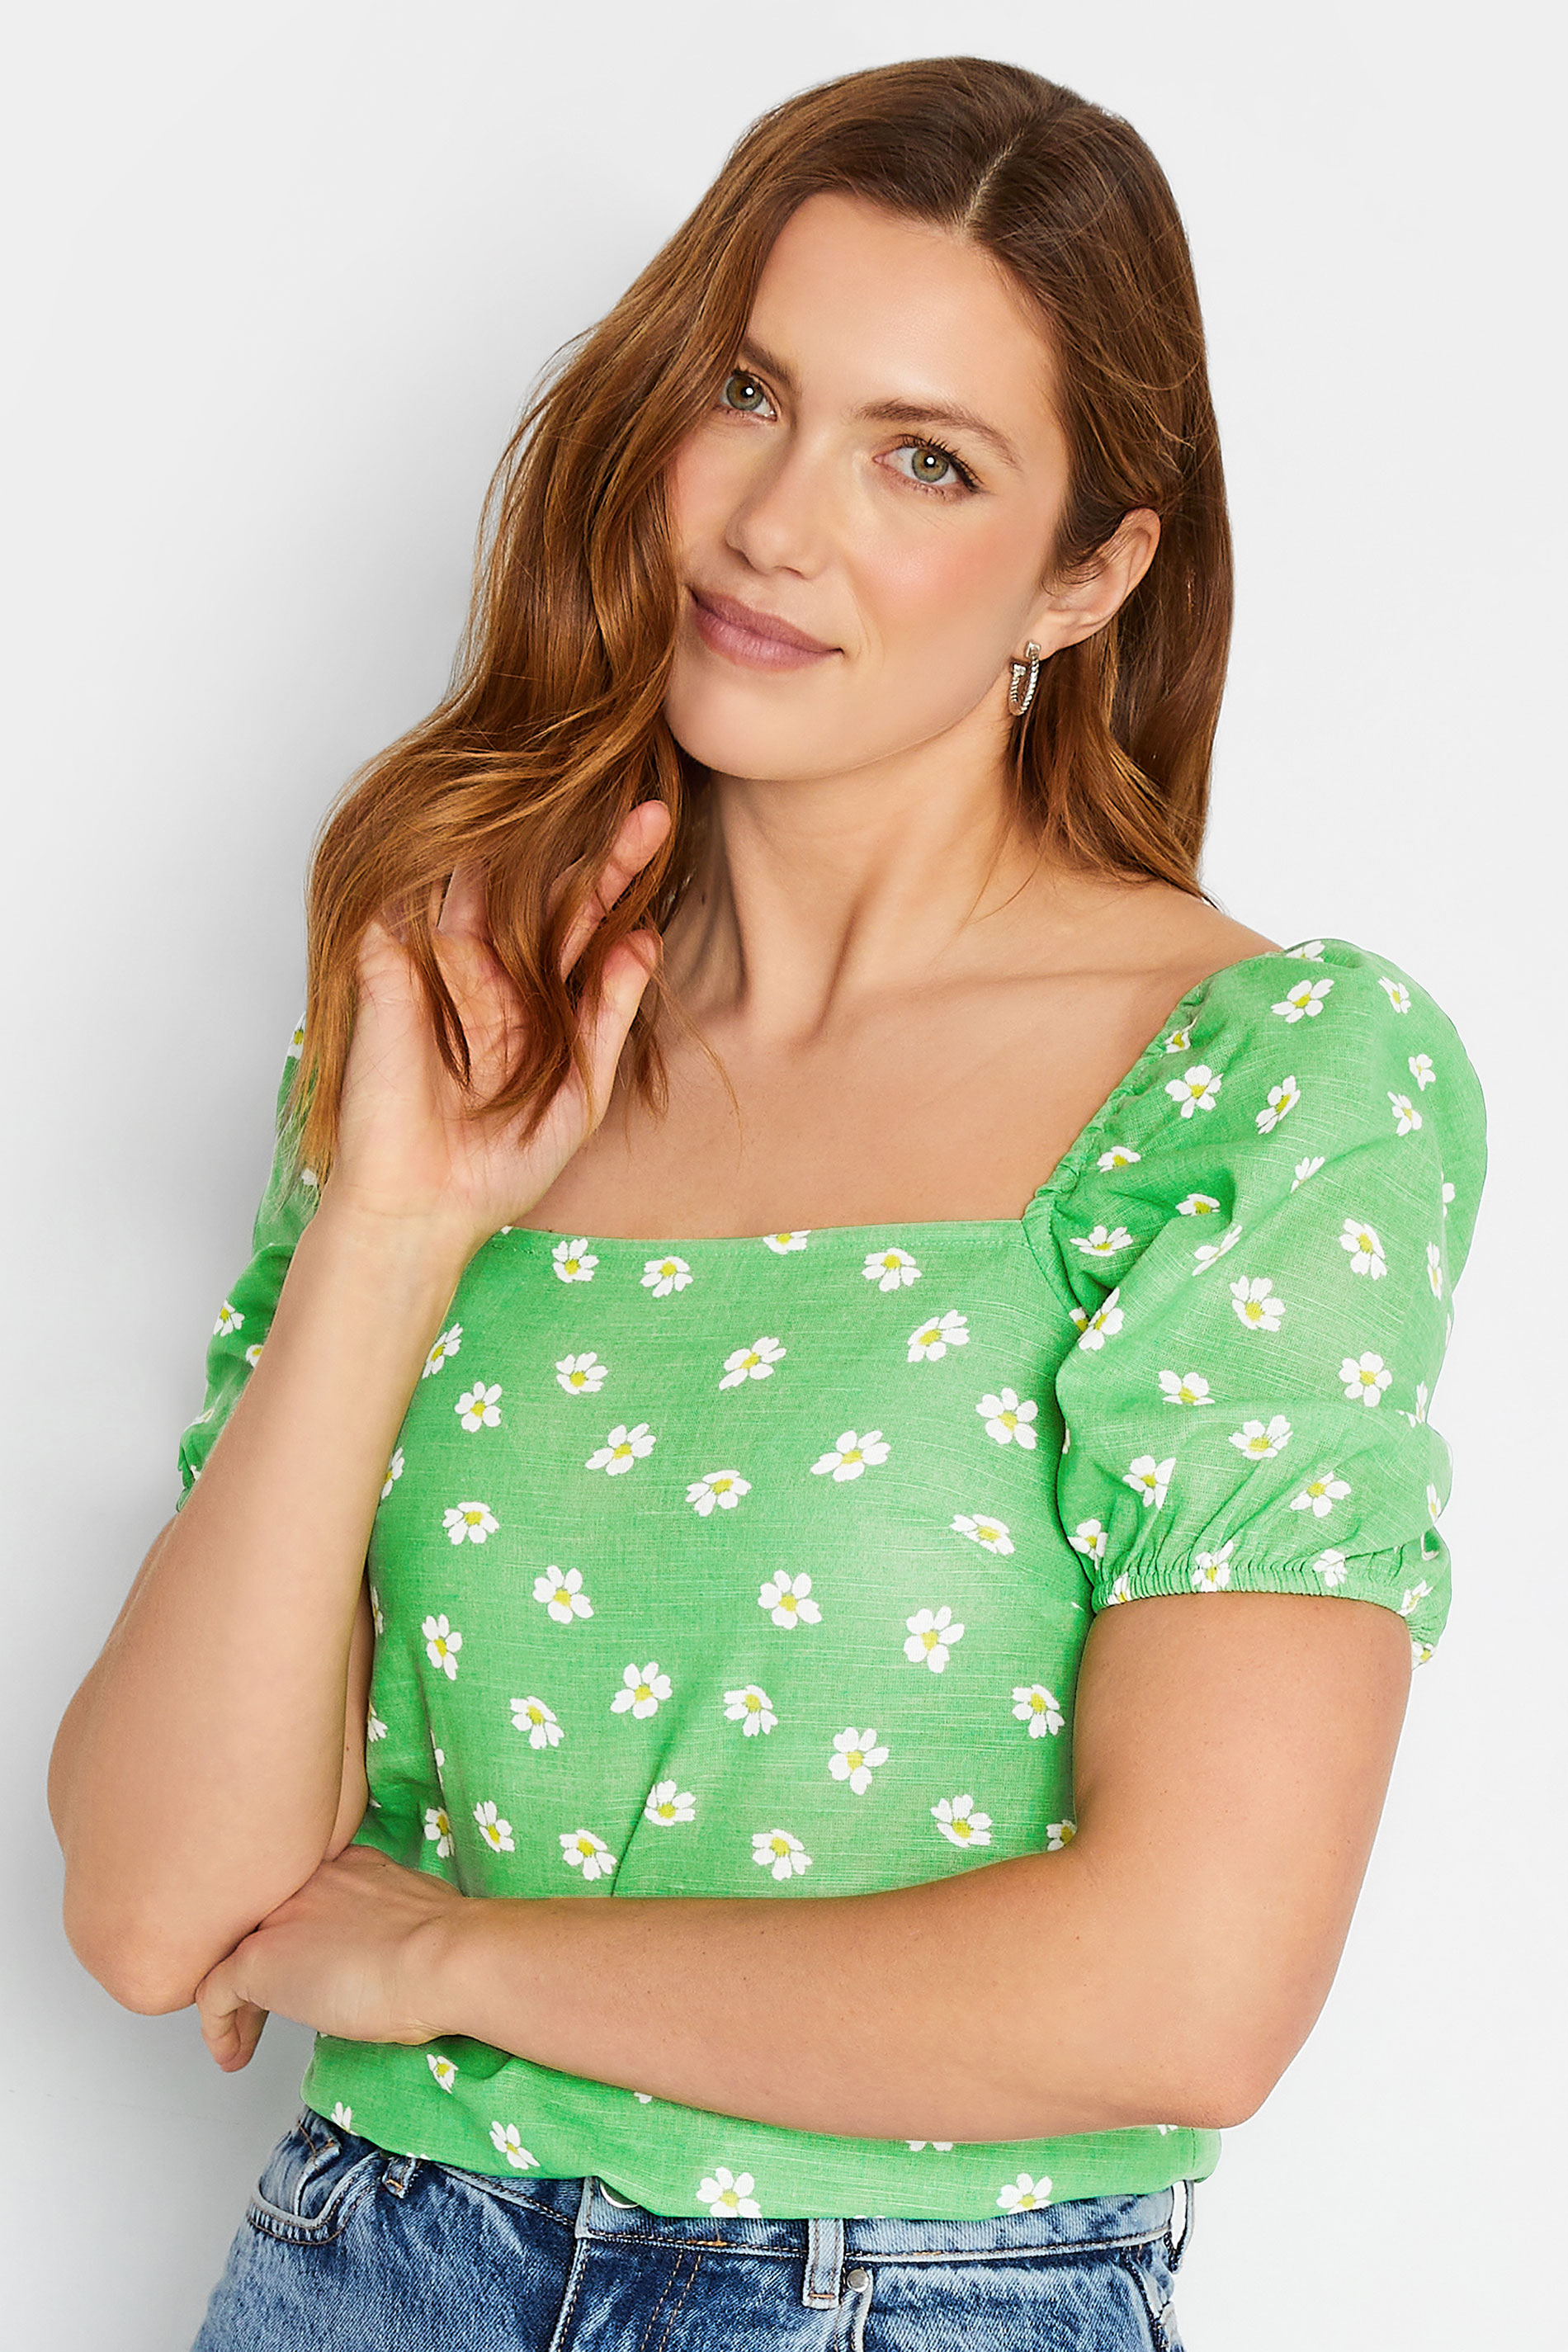 LTS Tall Women's Green Floral Print Linen Blend Top | Long Tall Sally 1